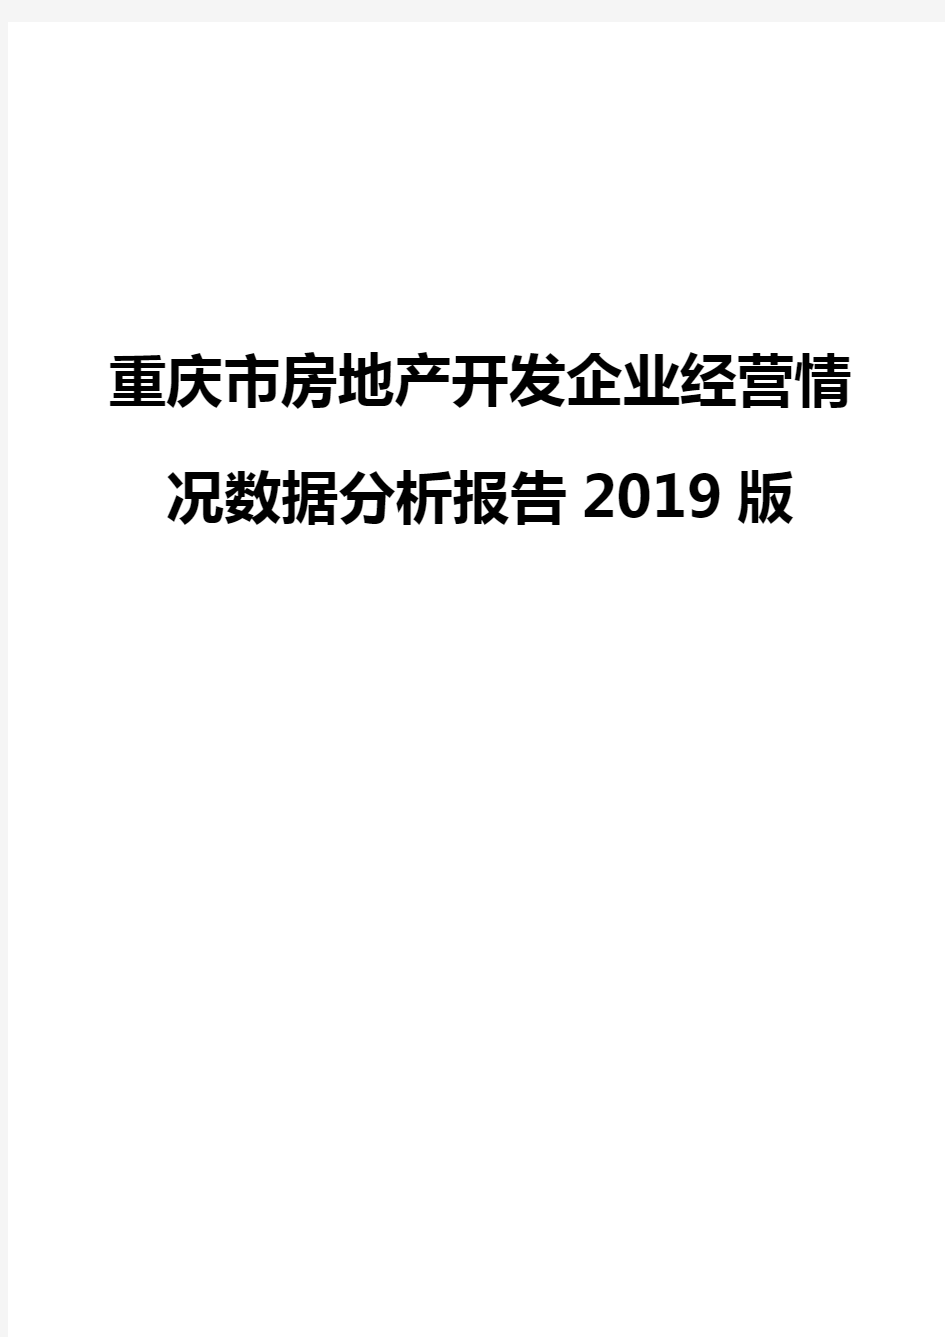 重庆市房地产开发企业经营情况数据分析报告2019版